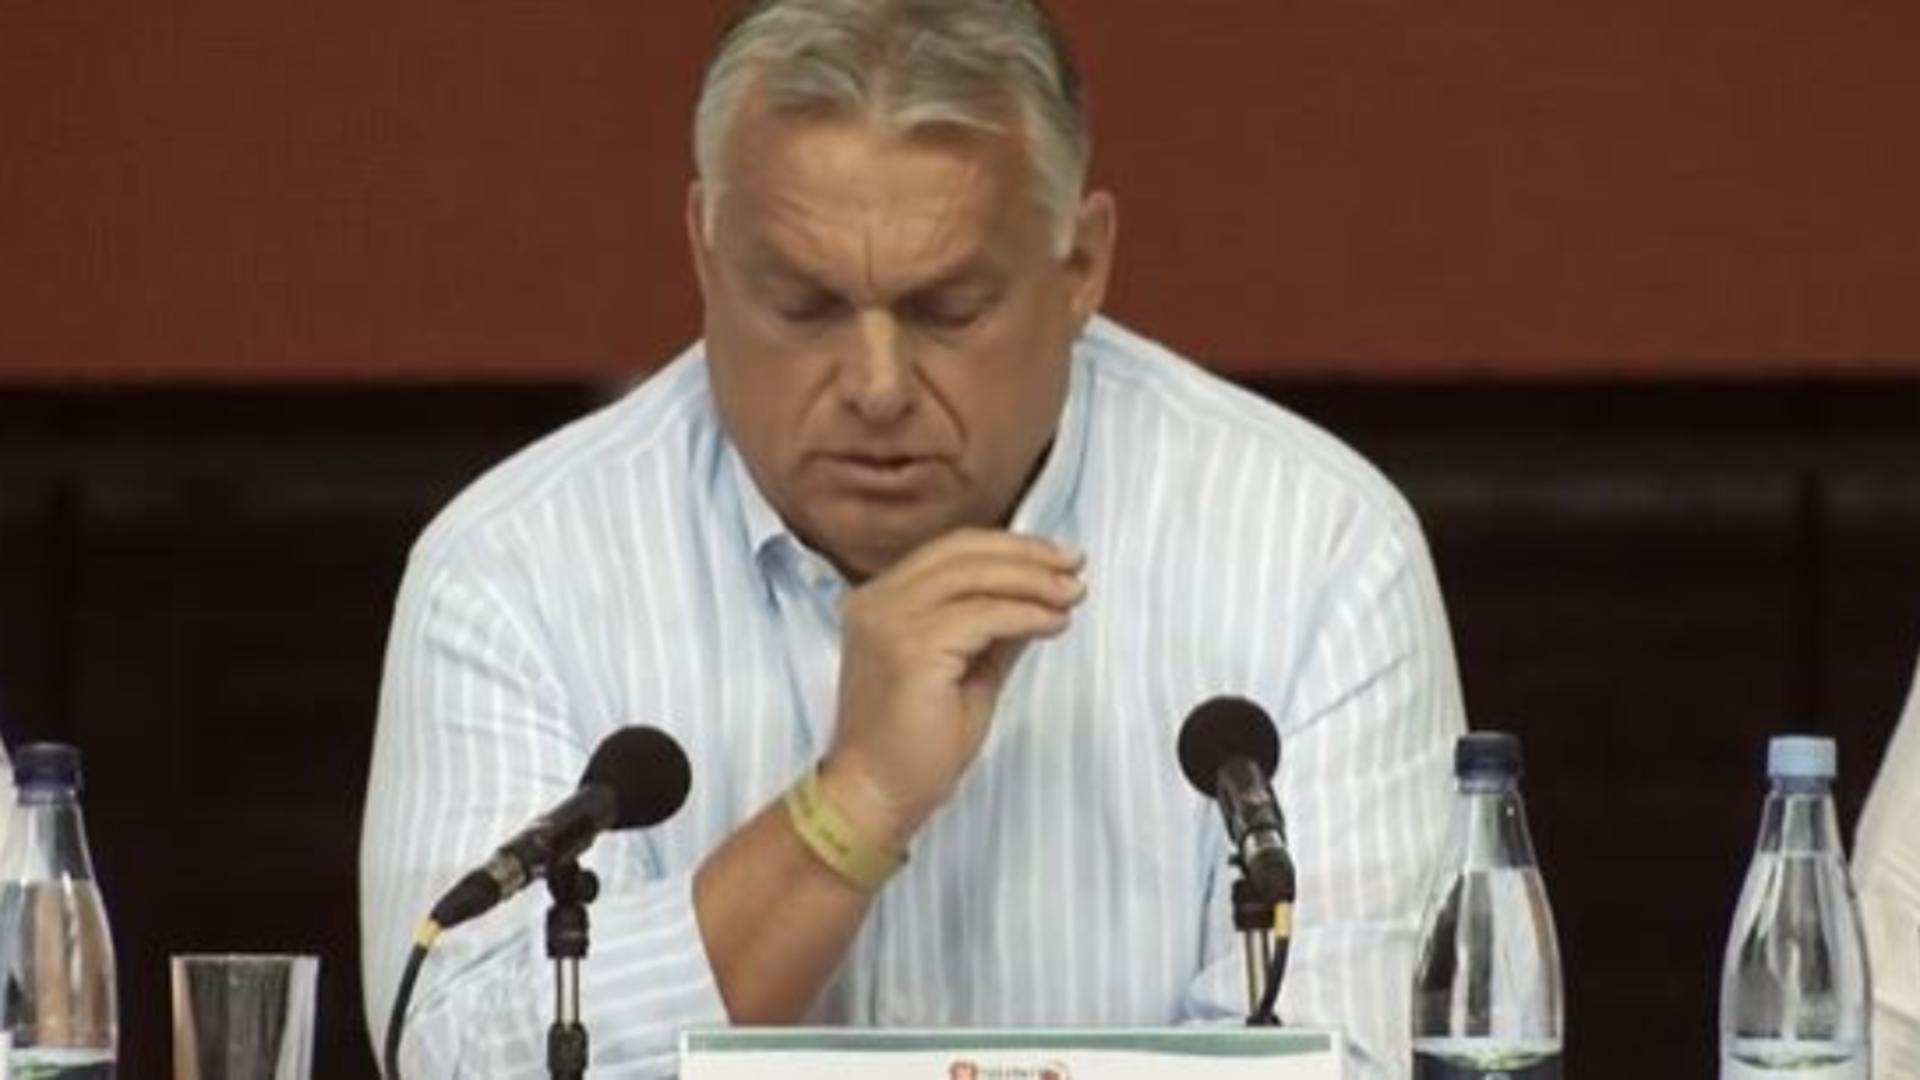 Viktor Orban, la Tușnad: “Anul acesta, MAE din România mi-a zis ce am voie să vorbesc, ce nu am voie și trebuie să evit”